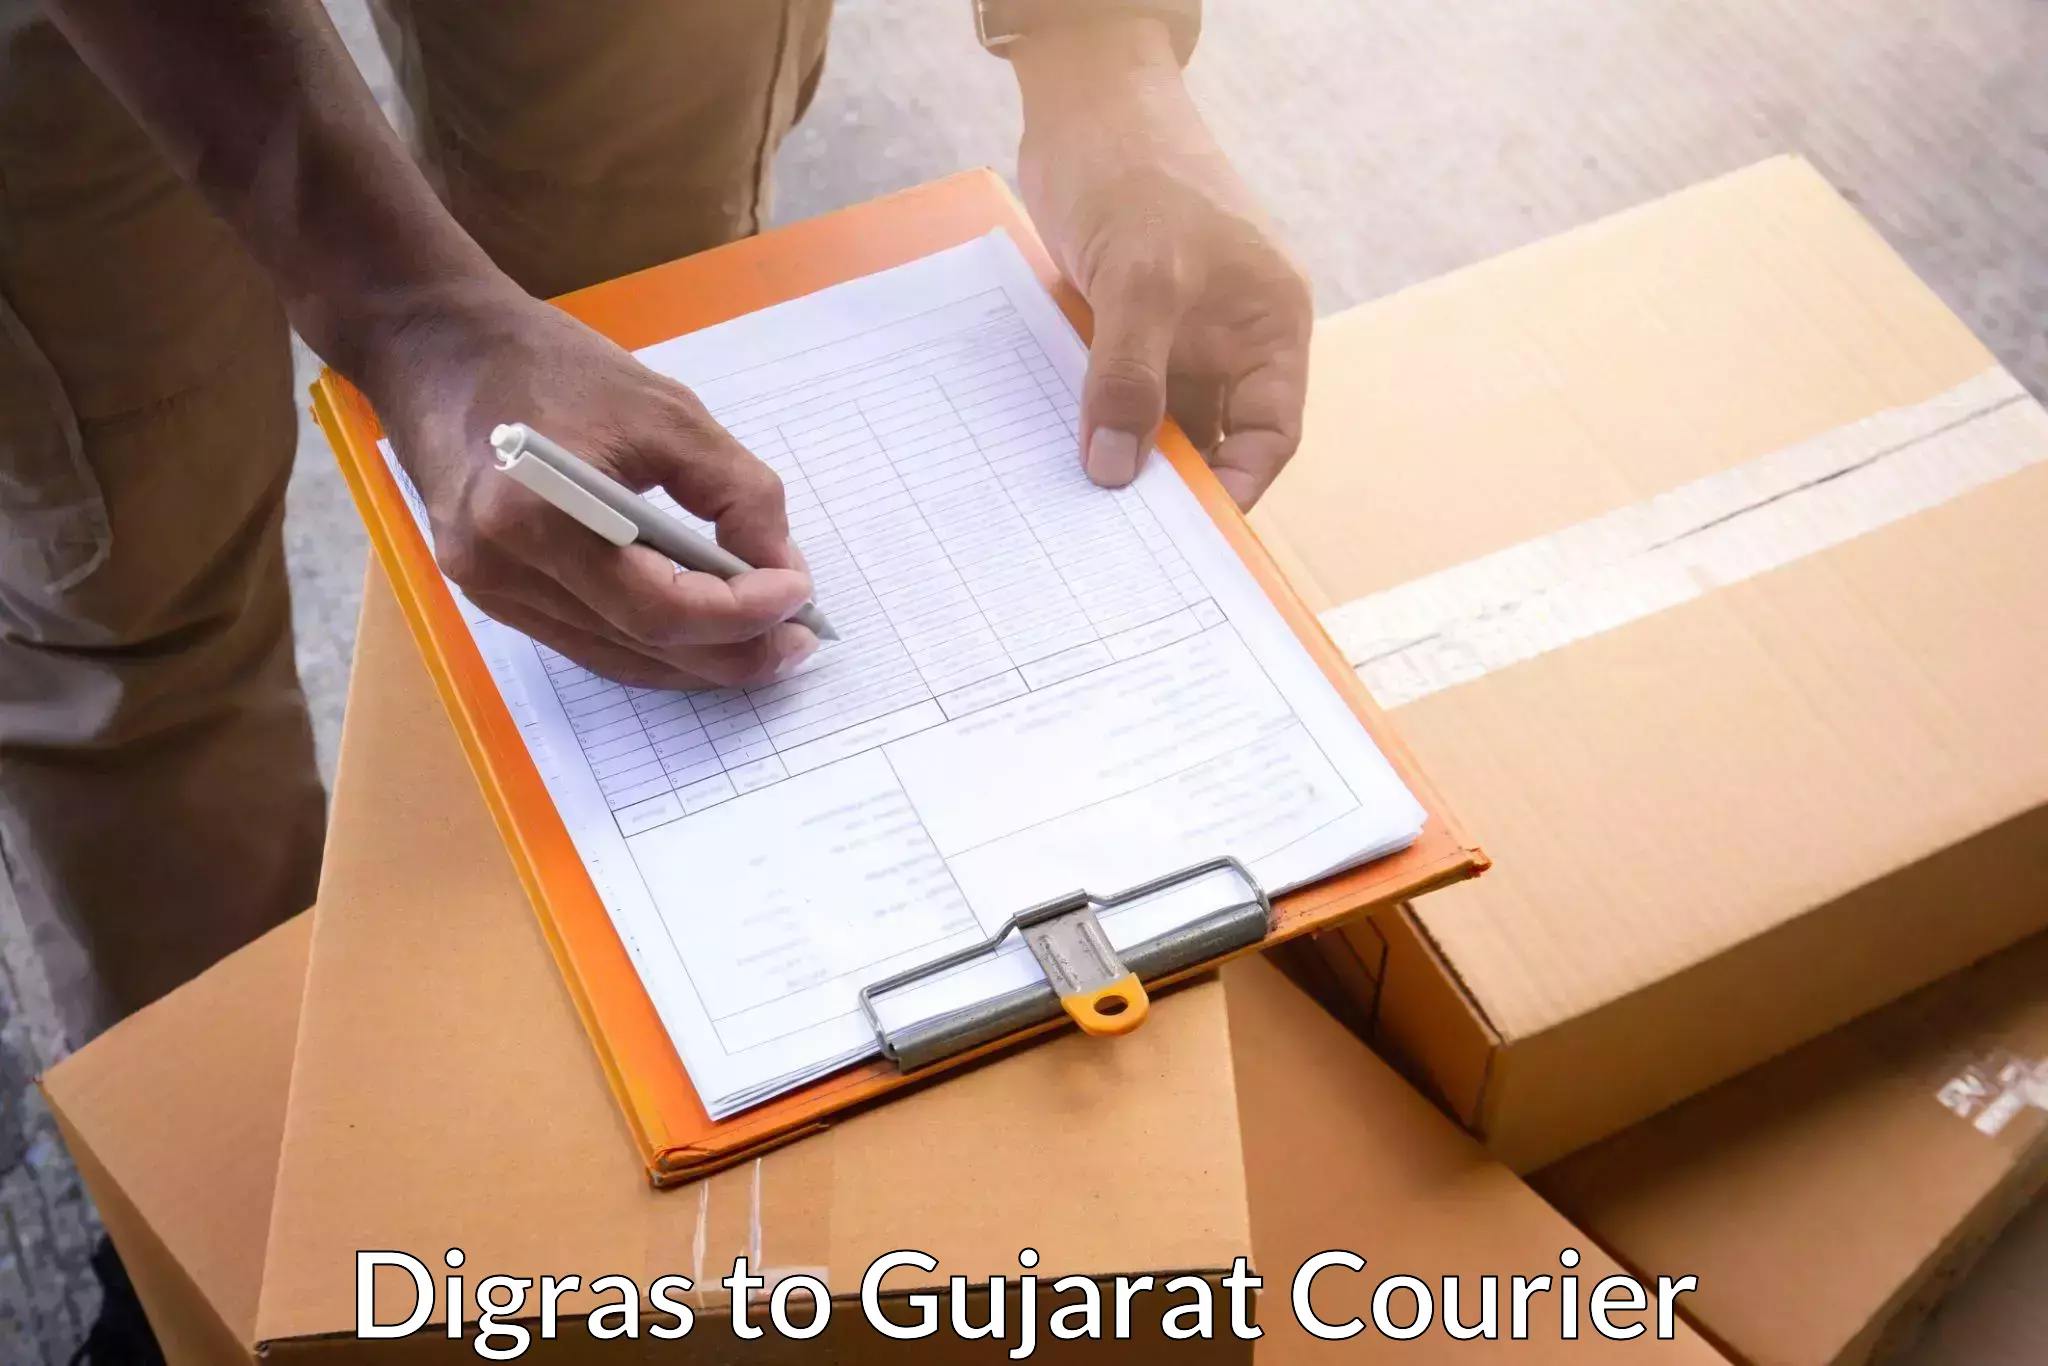 Bulk shipment Digras to Vijapur